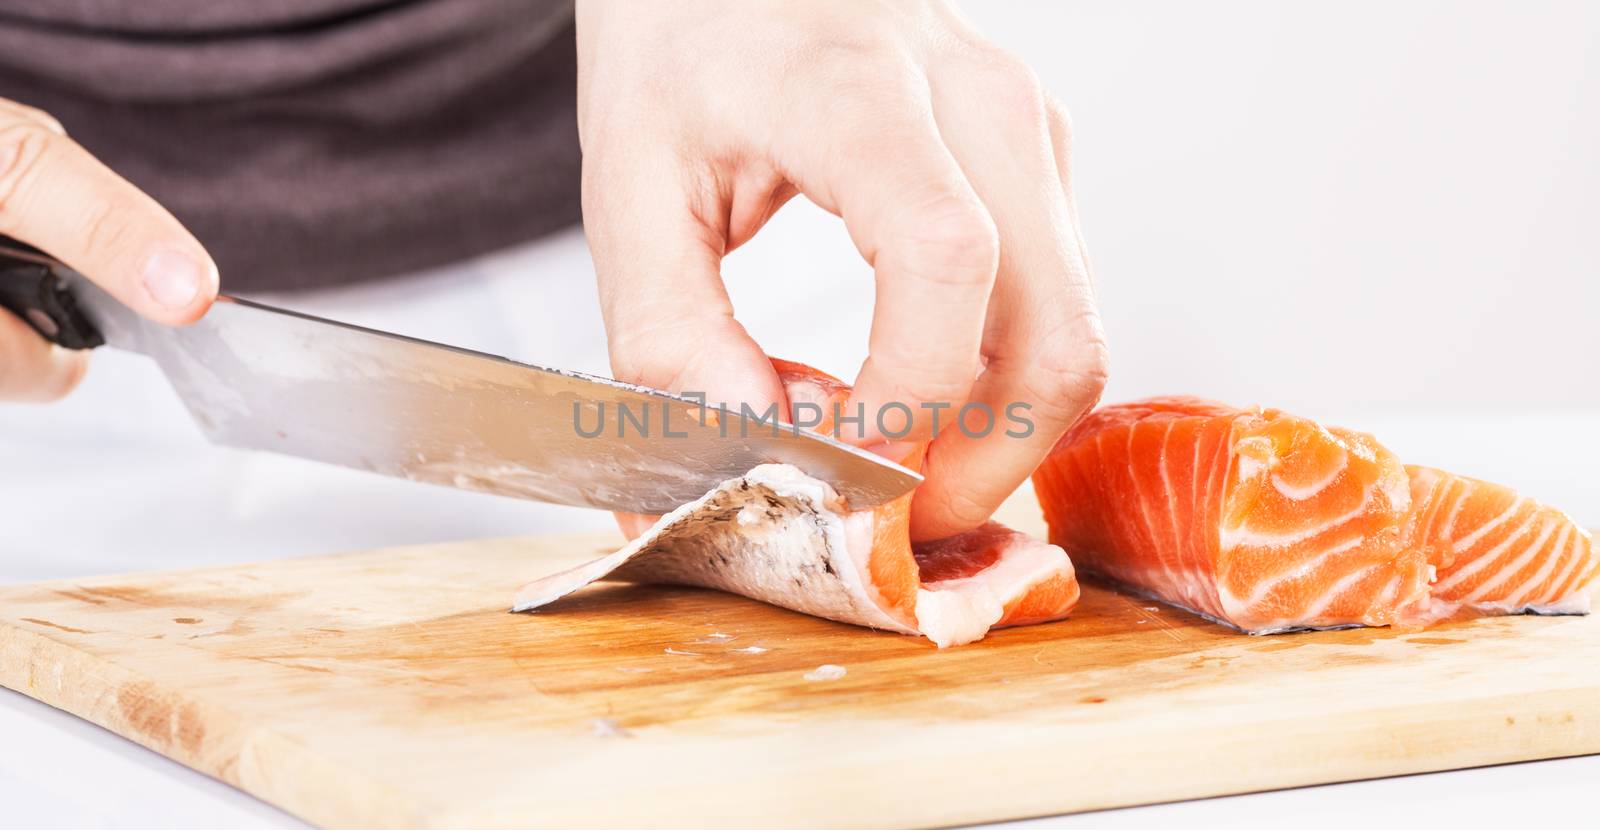 Preparing salmon in the cutting board.